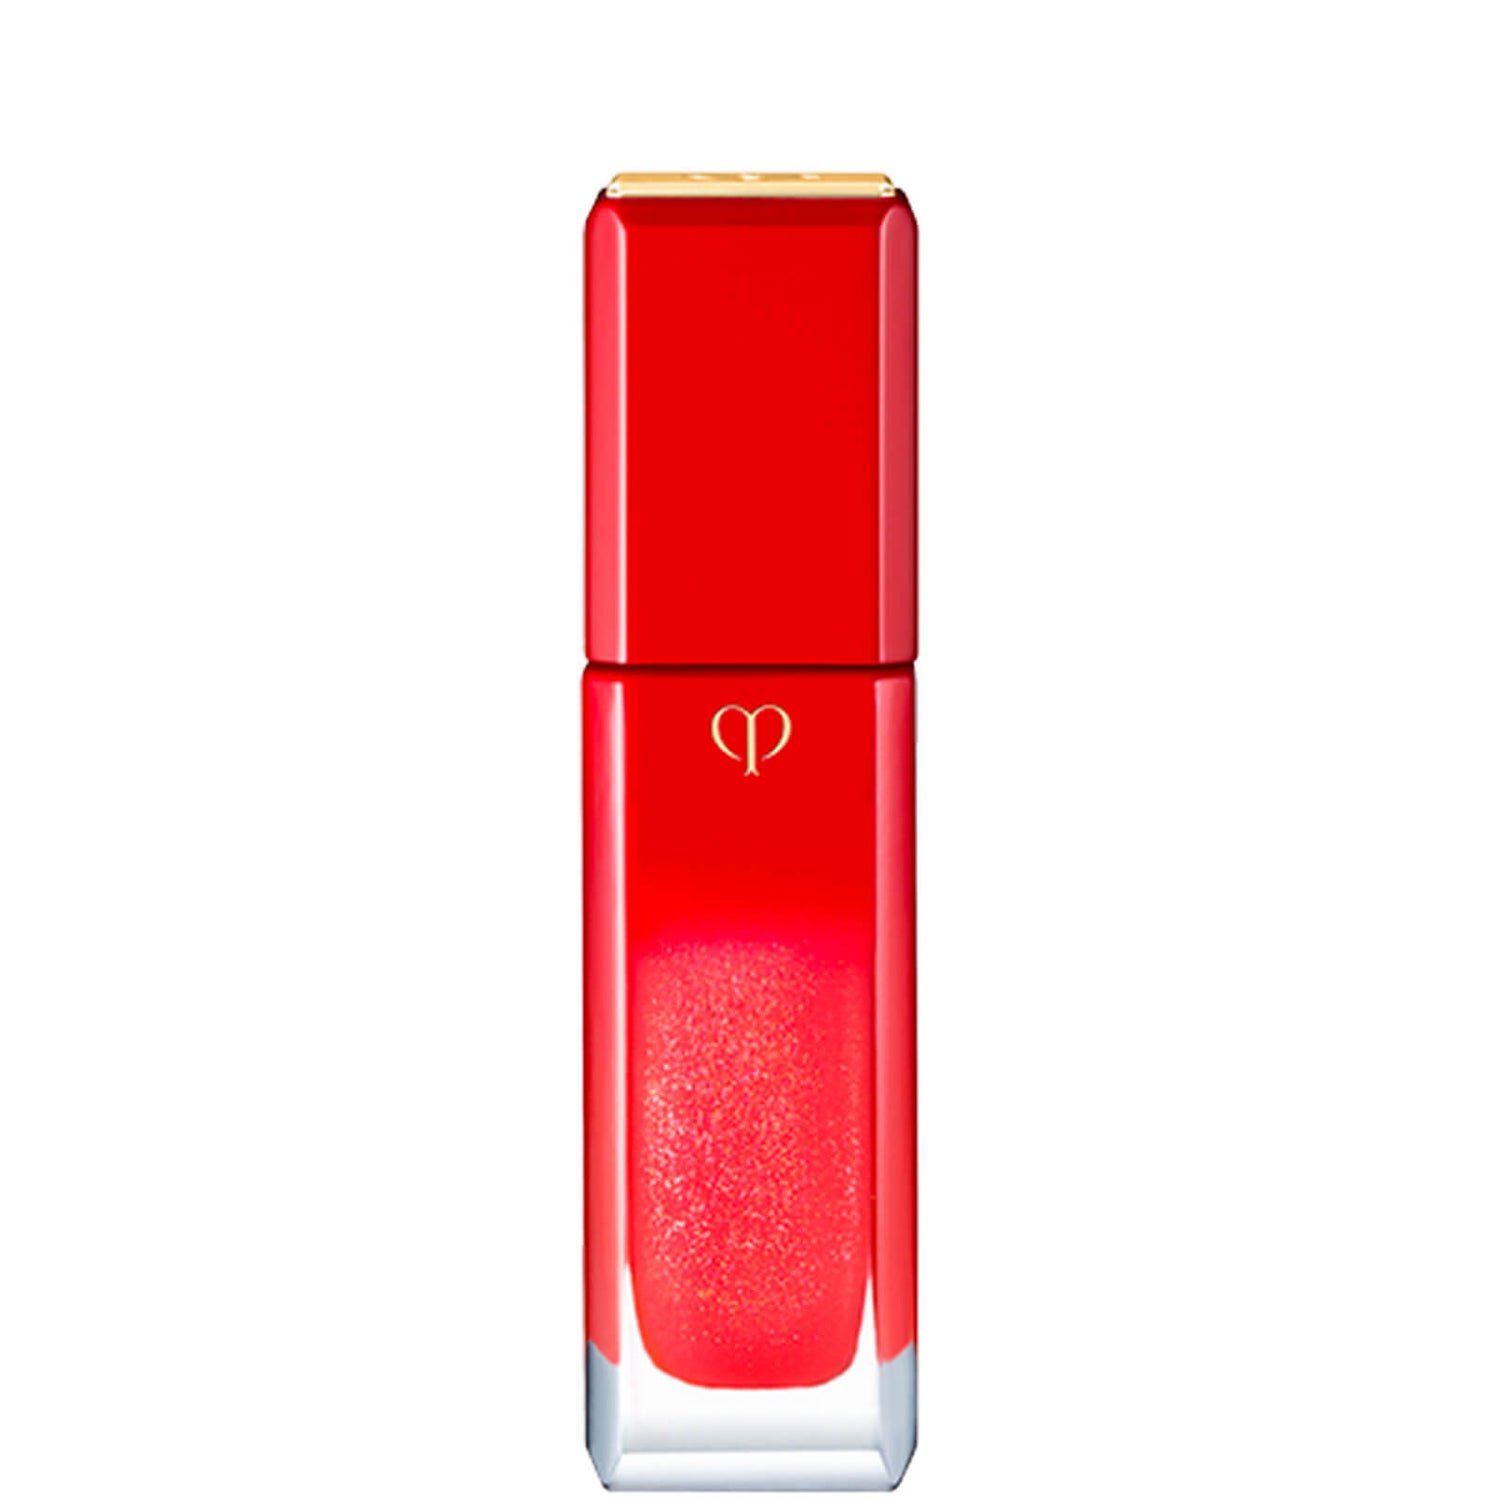 Clé de Peau Beauté Radiant Liquid Rouge Sparkles - Legend Red